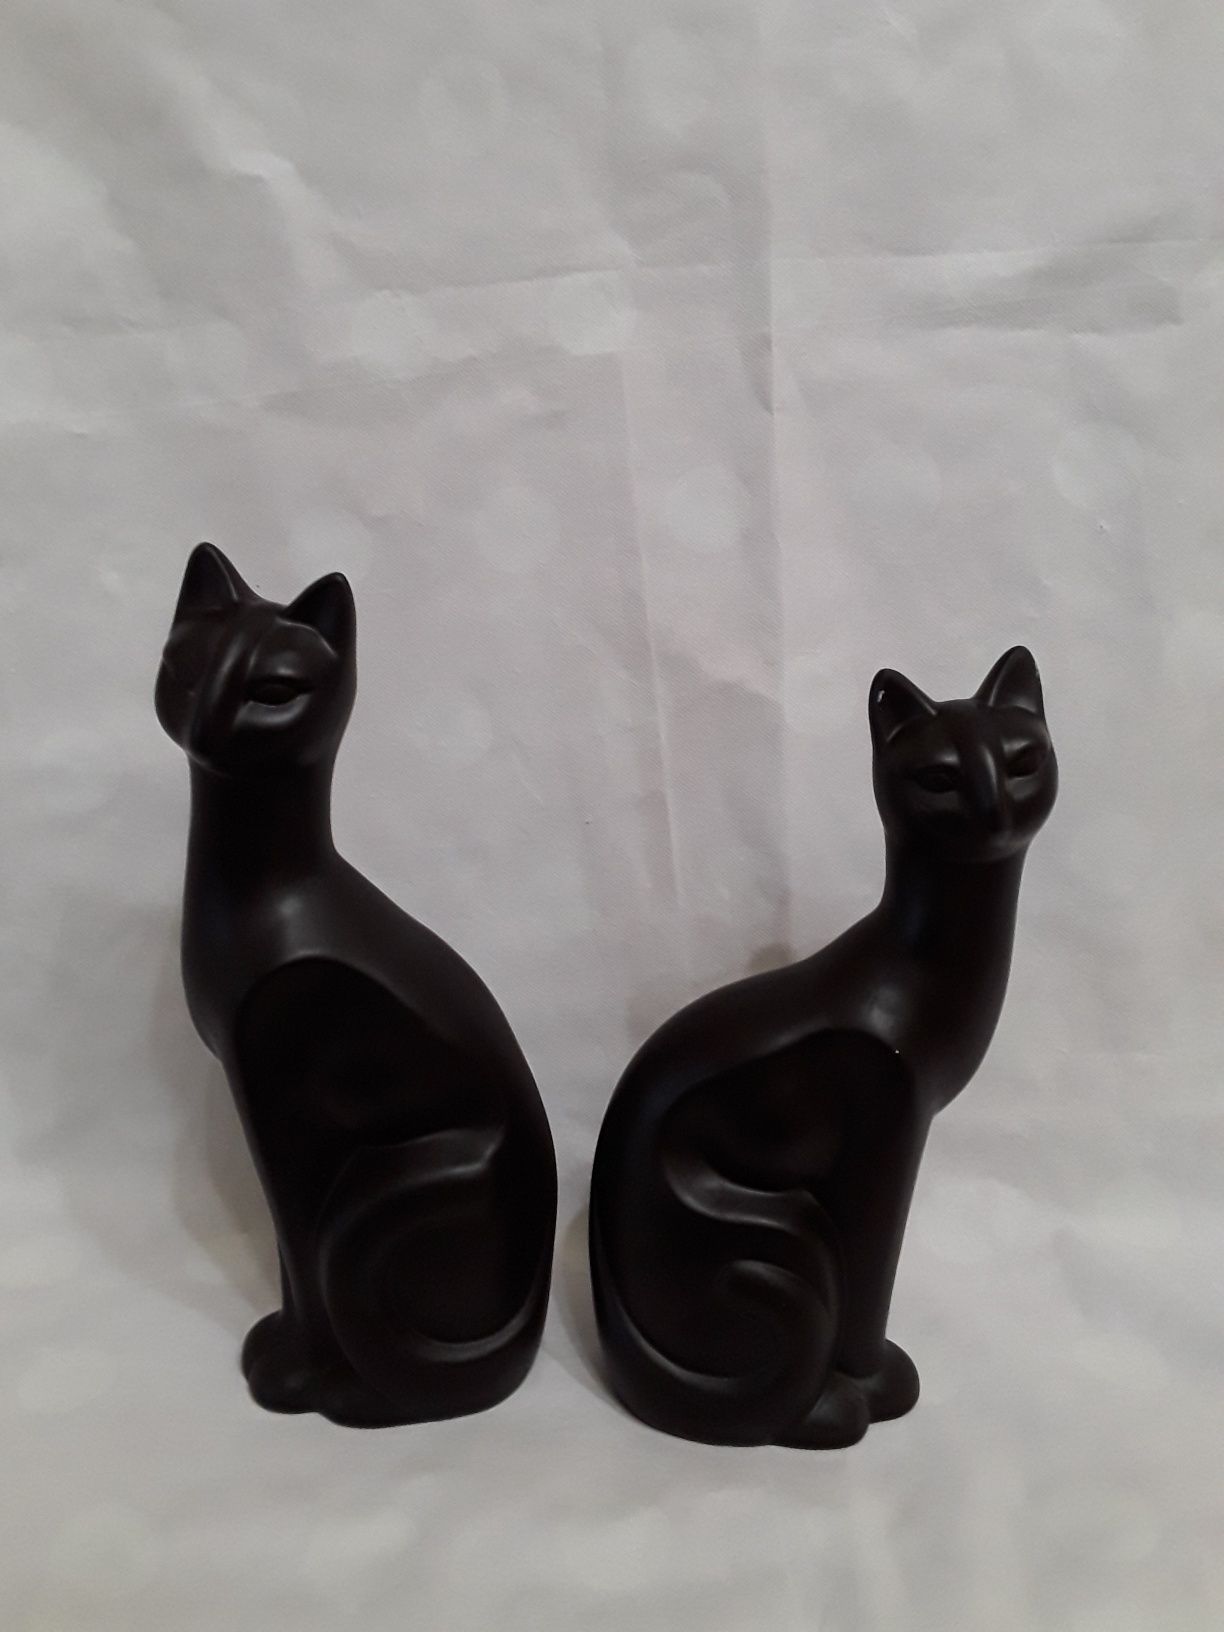 Pereche pisici,  ceramica, piese deosebite